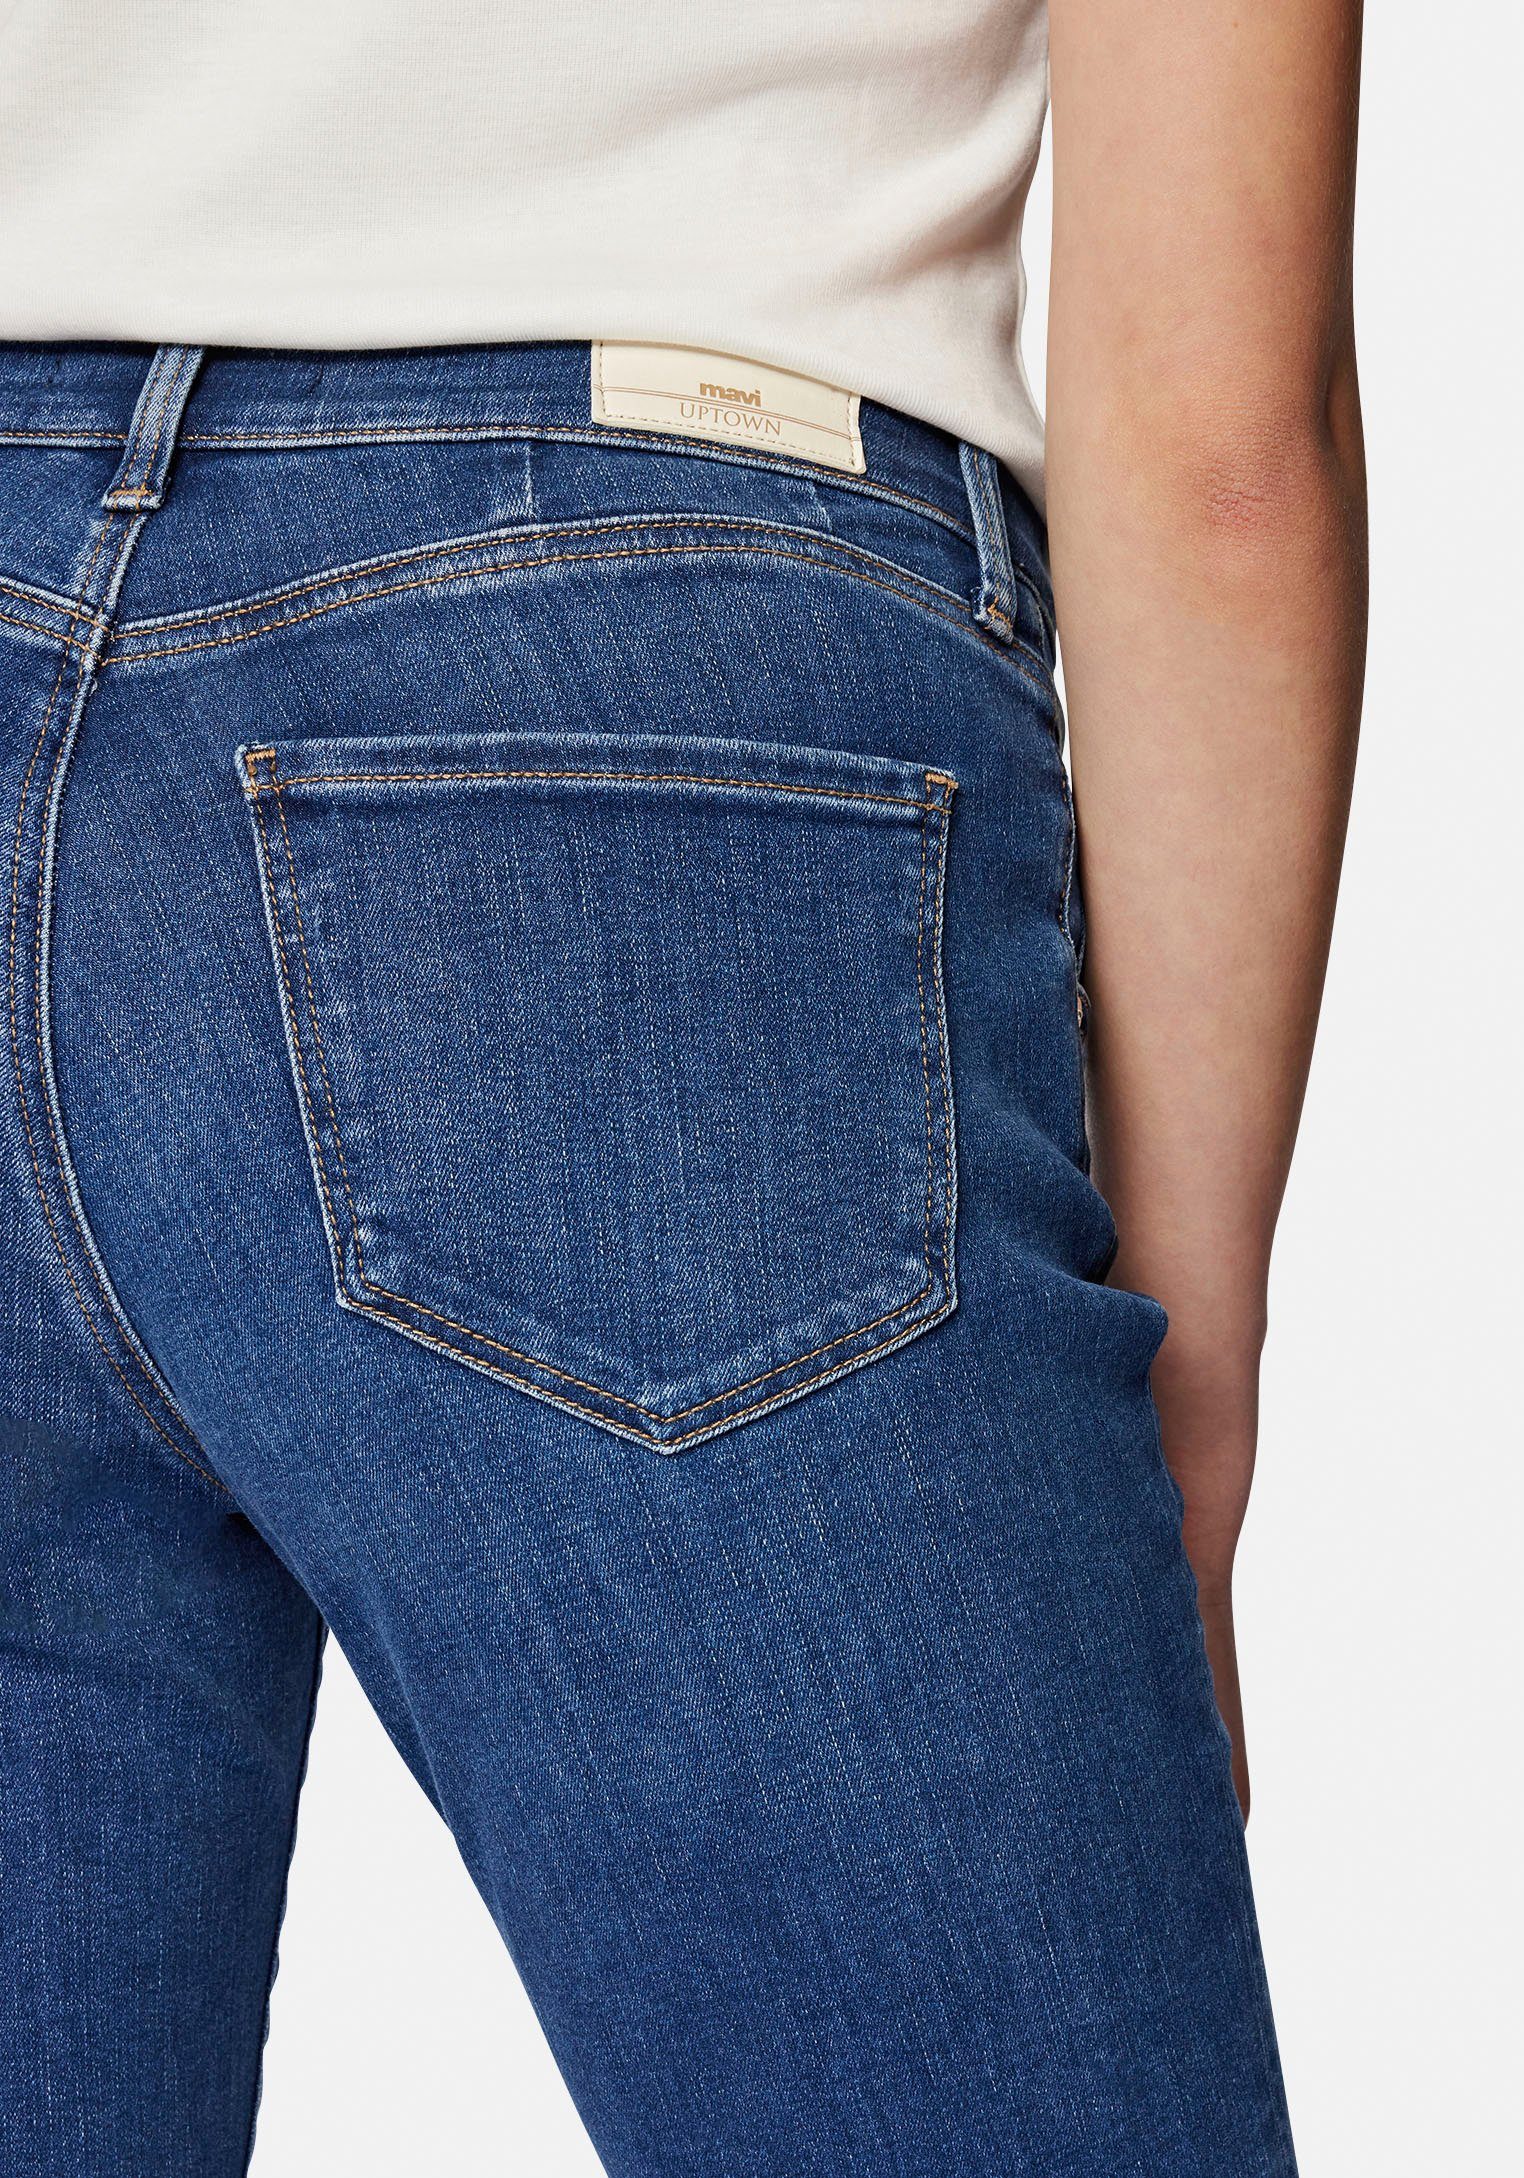 hochwertiger Slim-fit-Jeans trageangenehmer dank Stretchdenim Mavi Verarbeitung mid blue